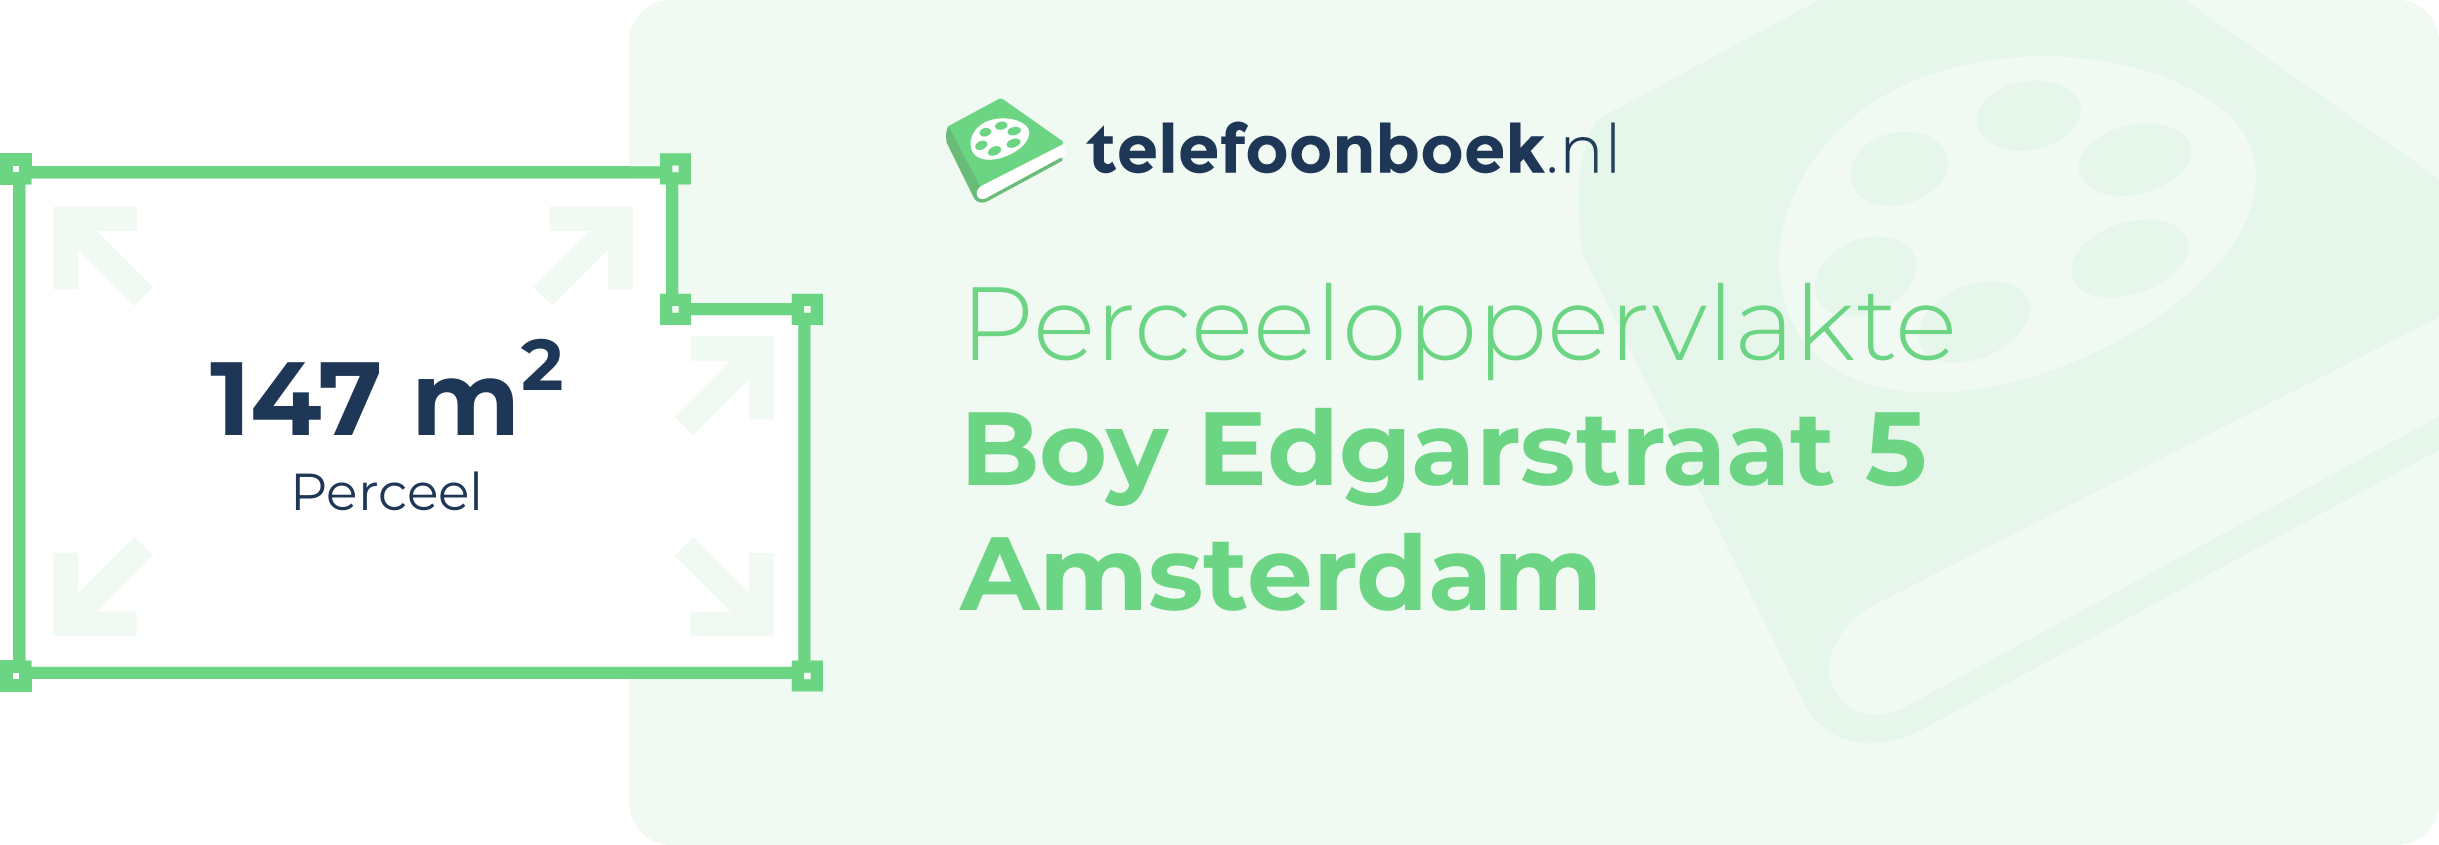 Perceeloppervlakte Boy Edgarstraat 5 Amsterdam